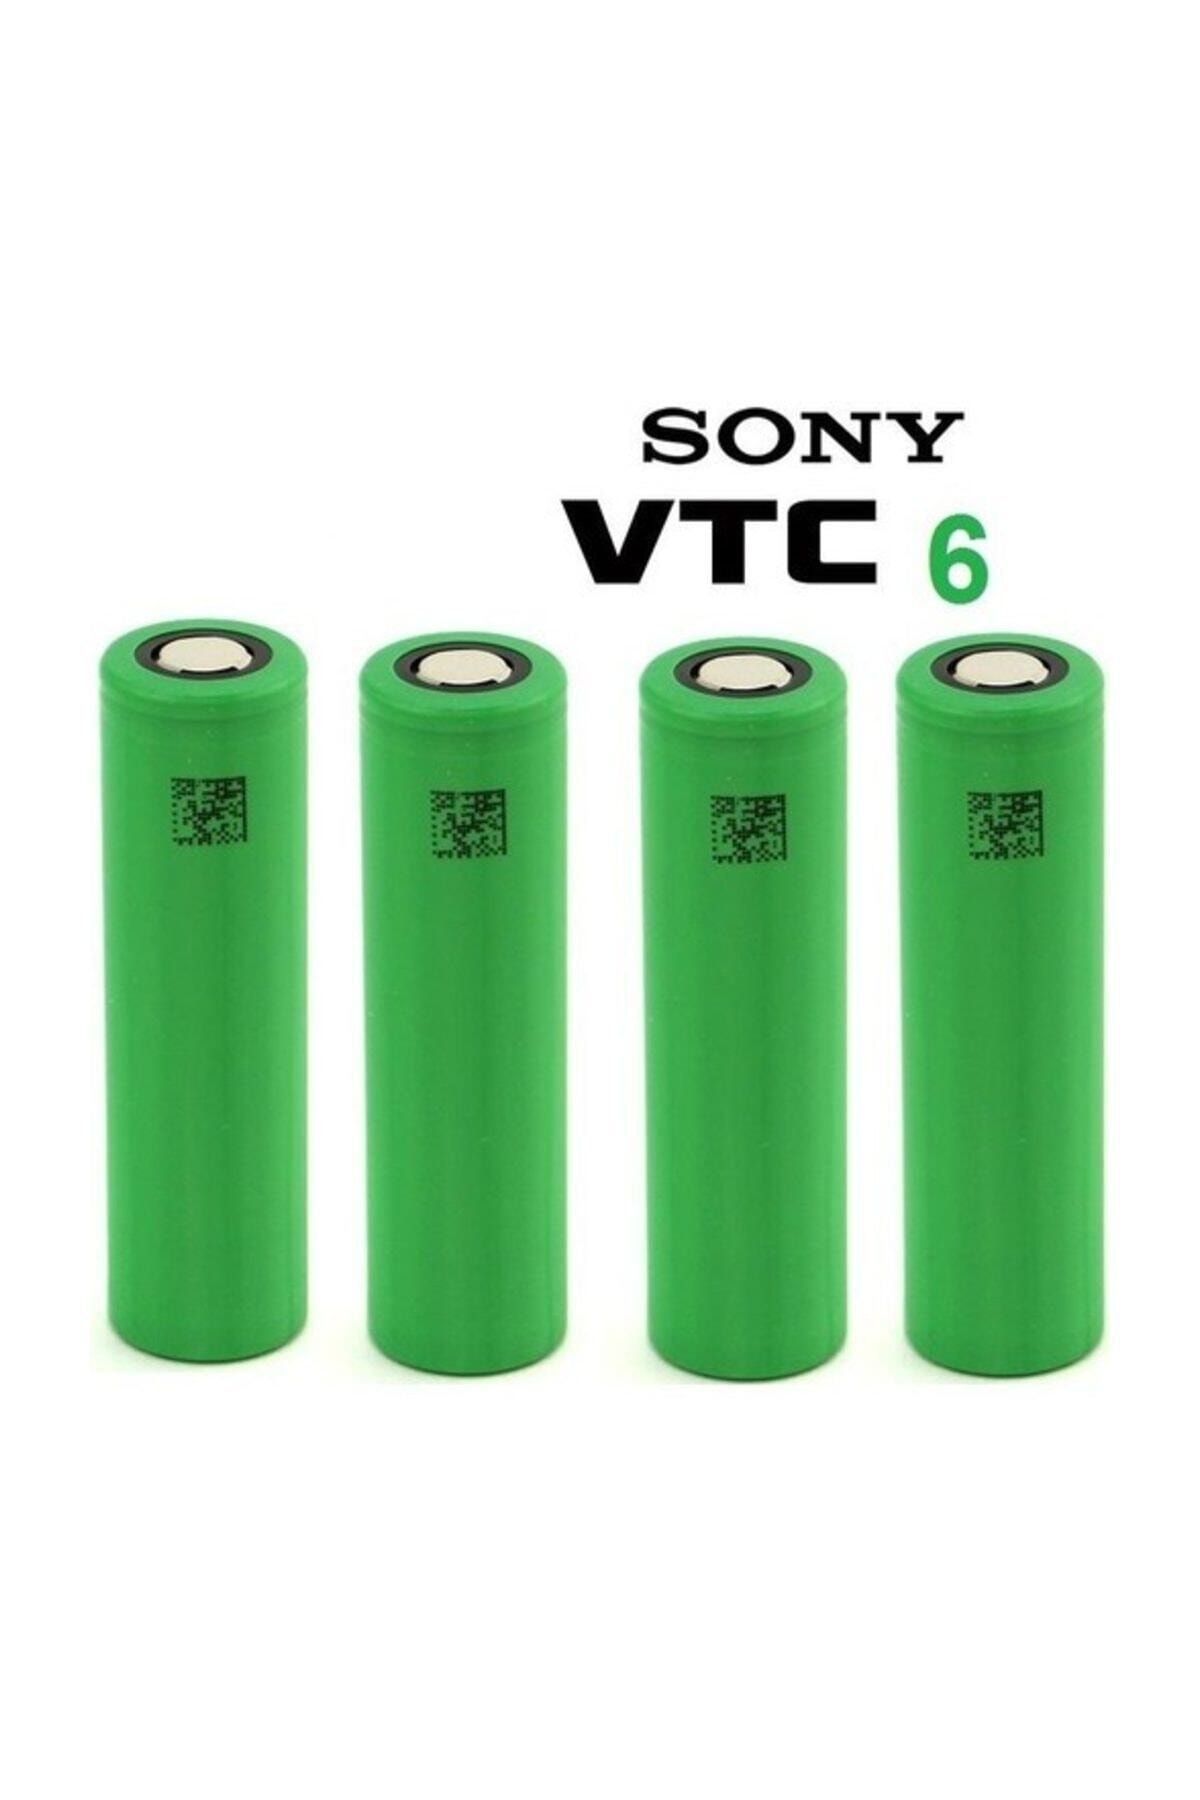 Vtc6 Pil. Sony VTC. Vtc6 Box. Sony vtc6